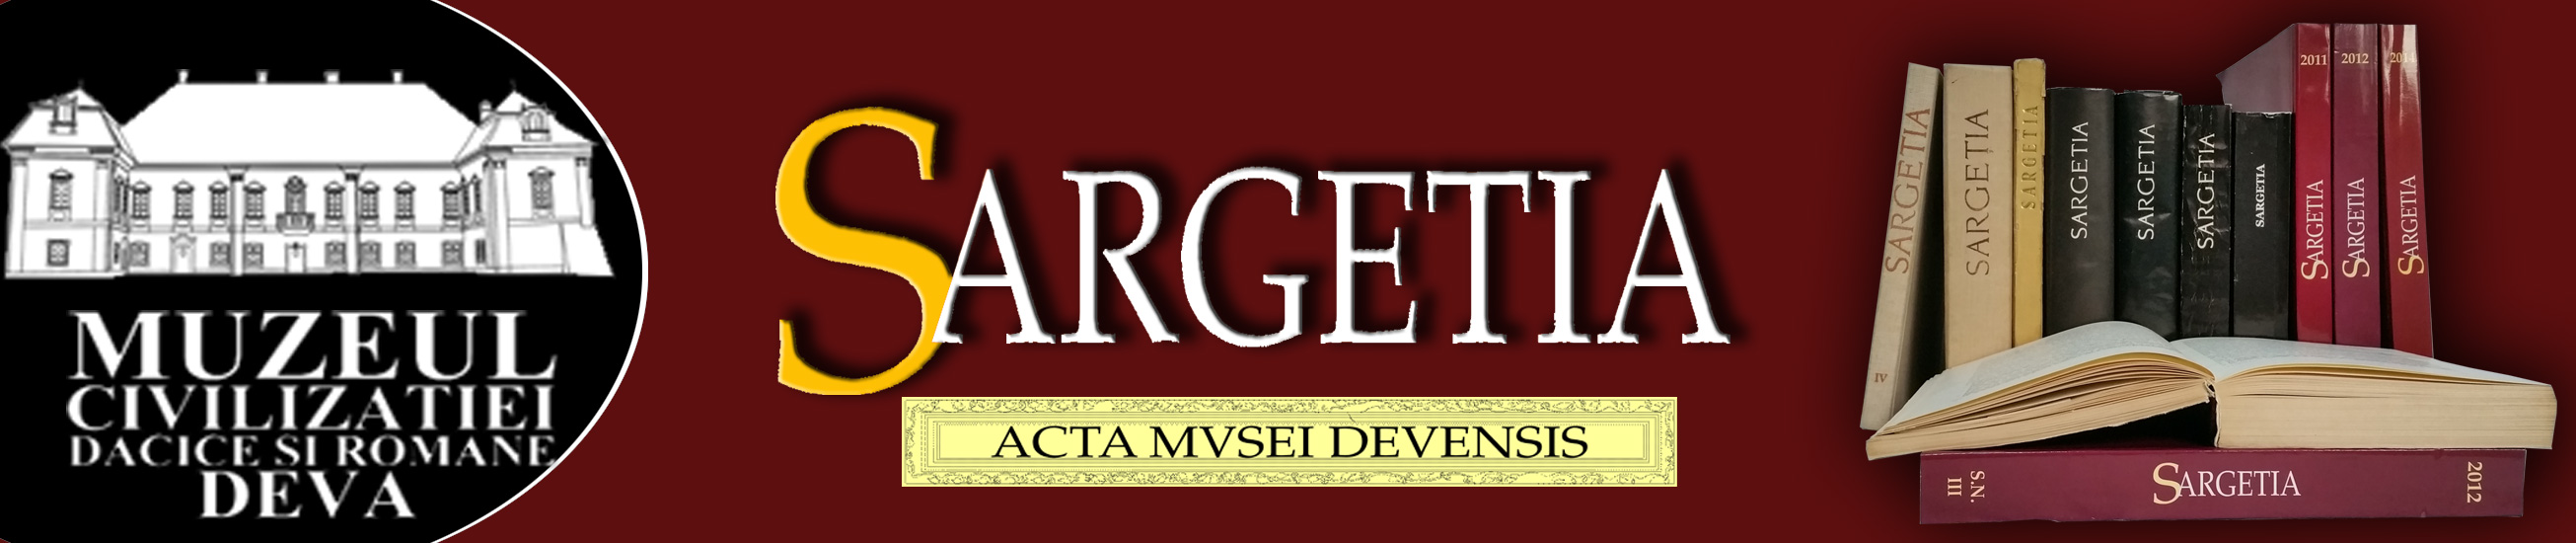 Sargetia. Acta Musei Devensis Cover Image